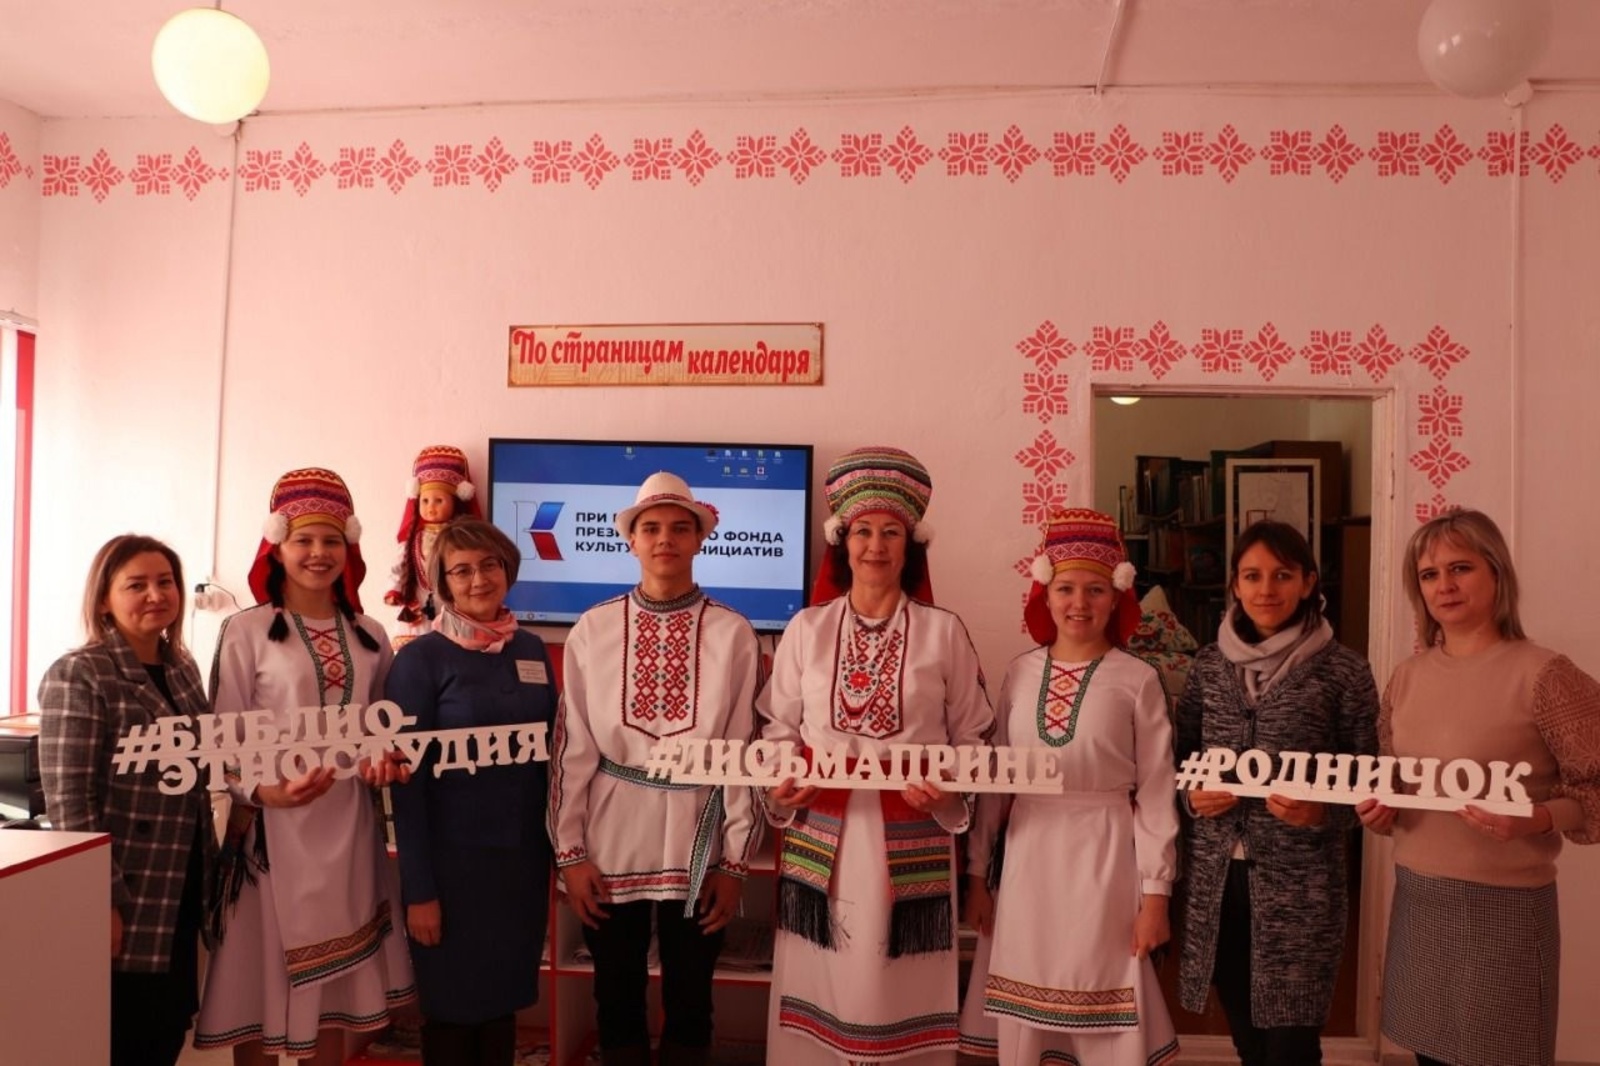 В одной из сельских библиотек Аургазинского района   состоялось открытие   Библио-этностудия "Лисьмаприне/Родничок"